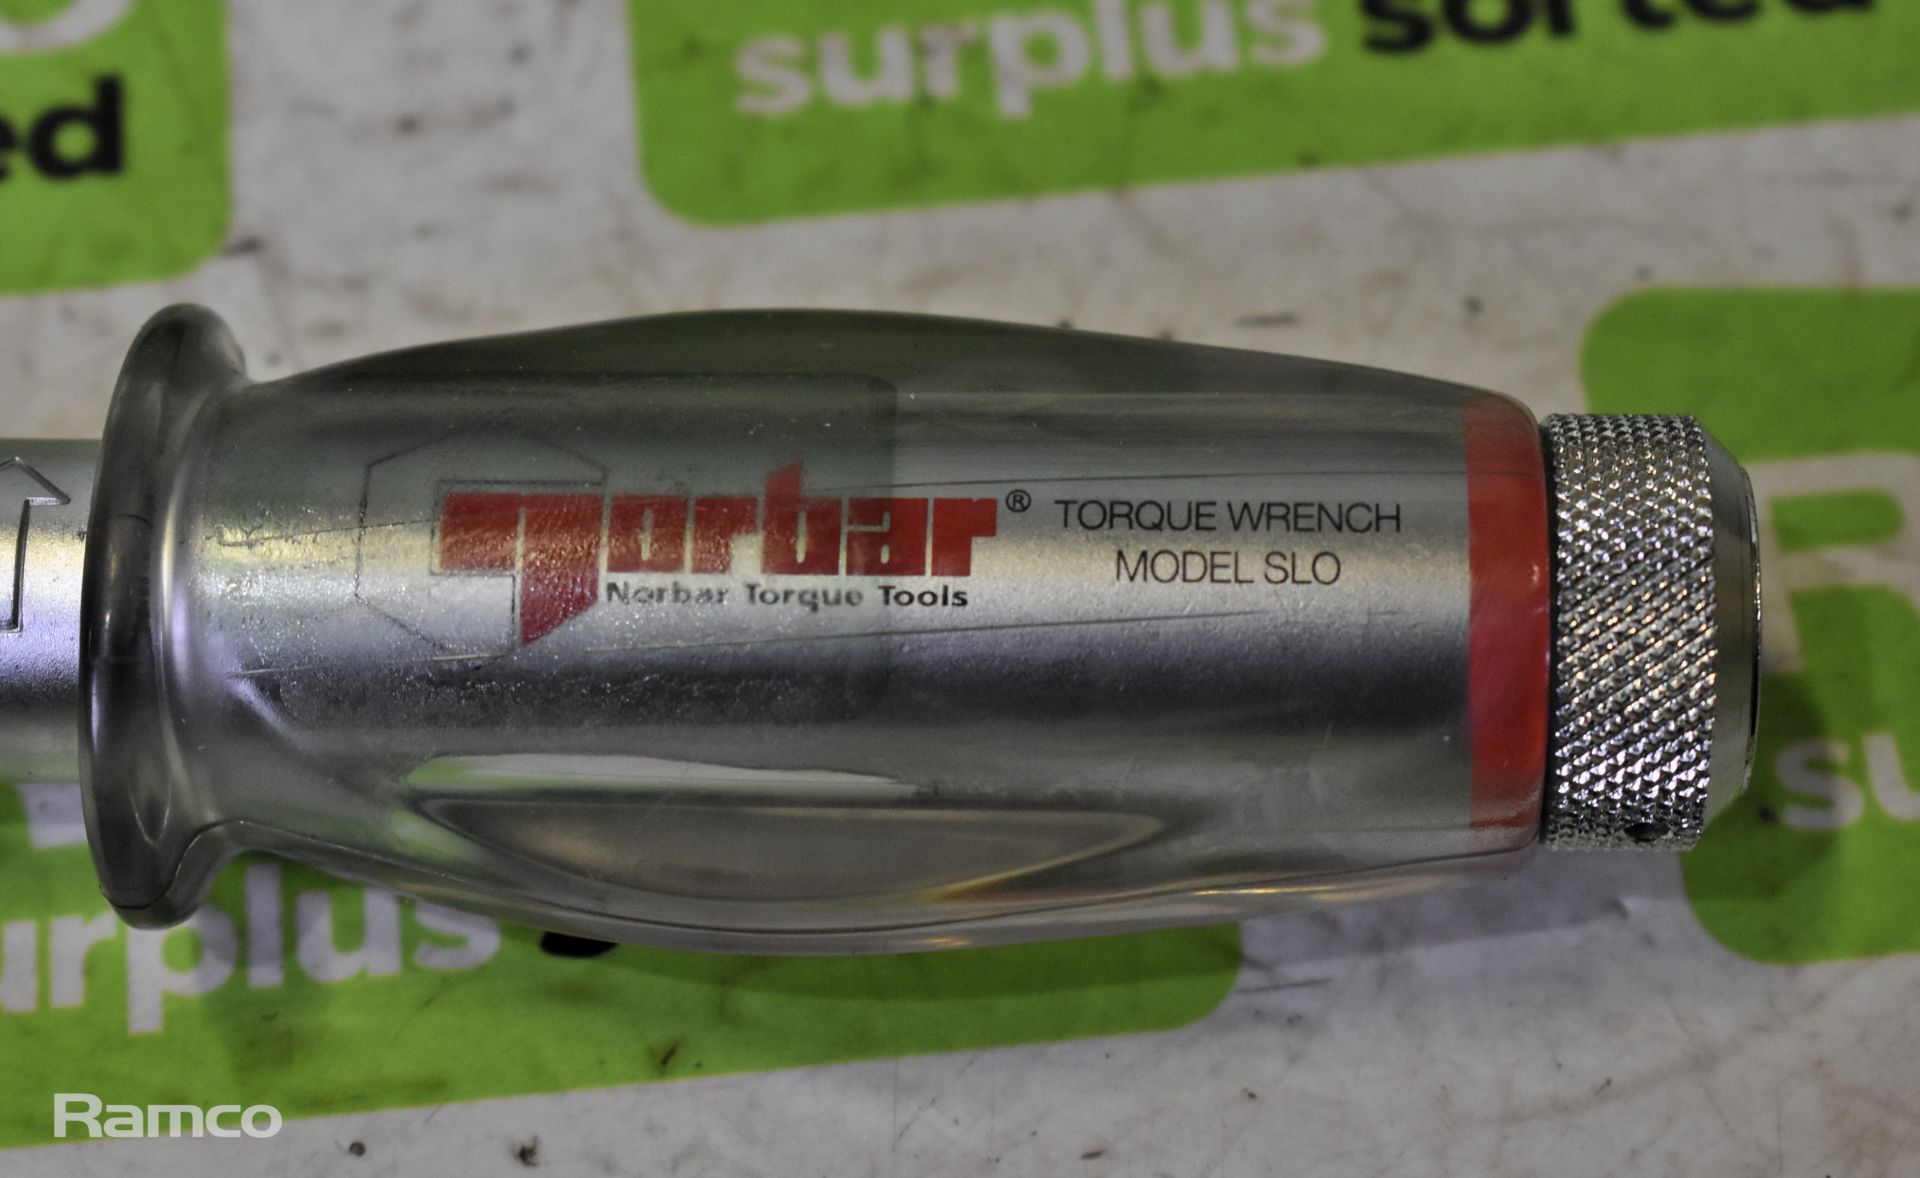 Norbar torque wrench handle - model SLO & Norbar torque wrench - model SLO - Image 2 of 3